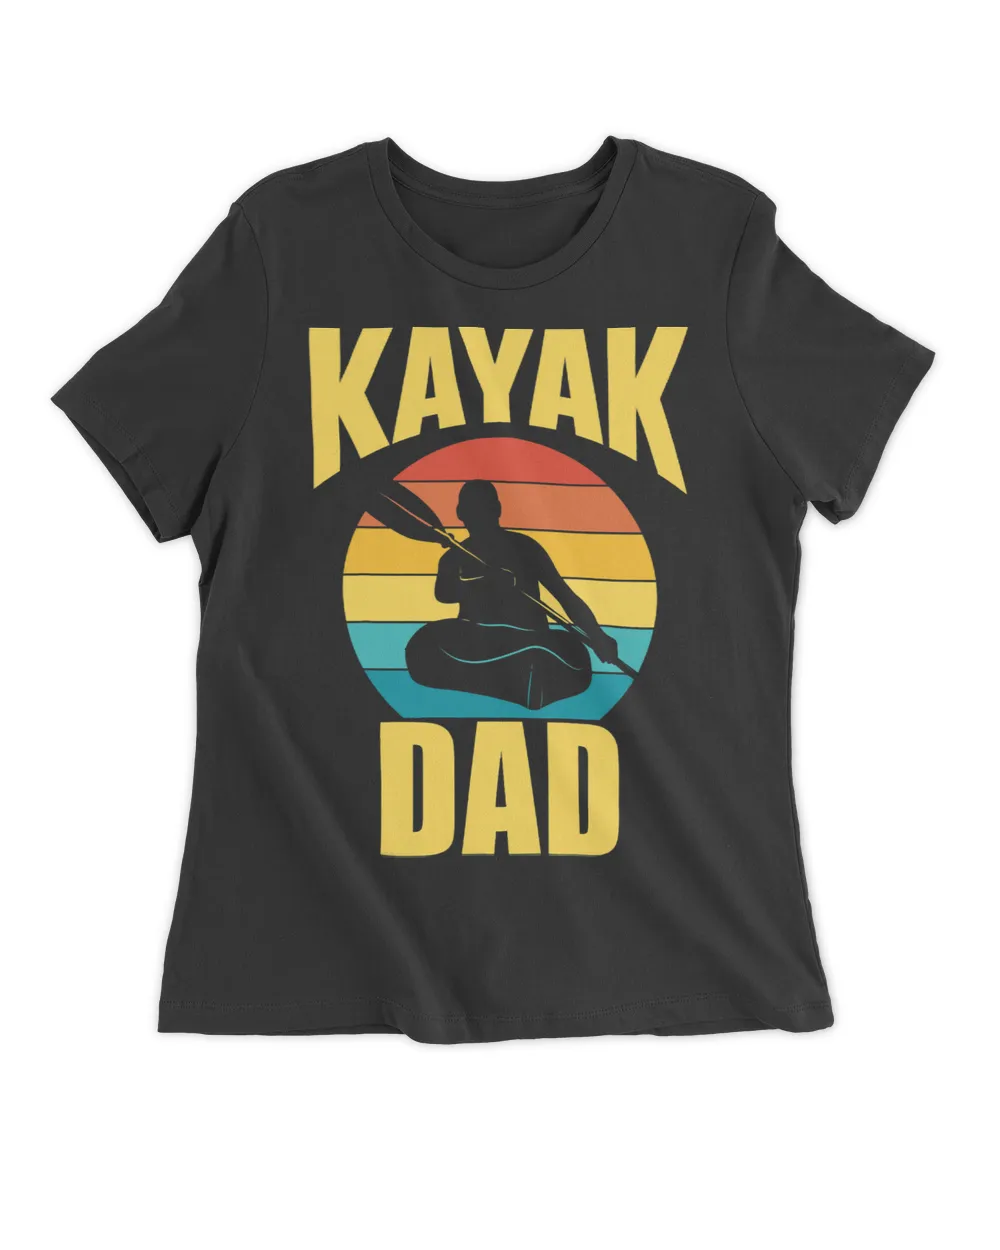 Kayak Water Dad Kayakist Kayaks Hobby Kayaking Father Daddy Papa